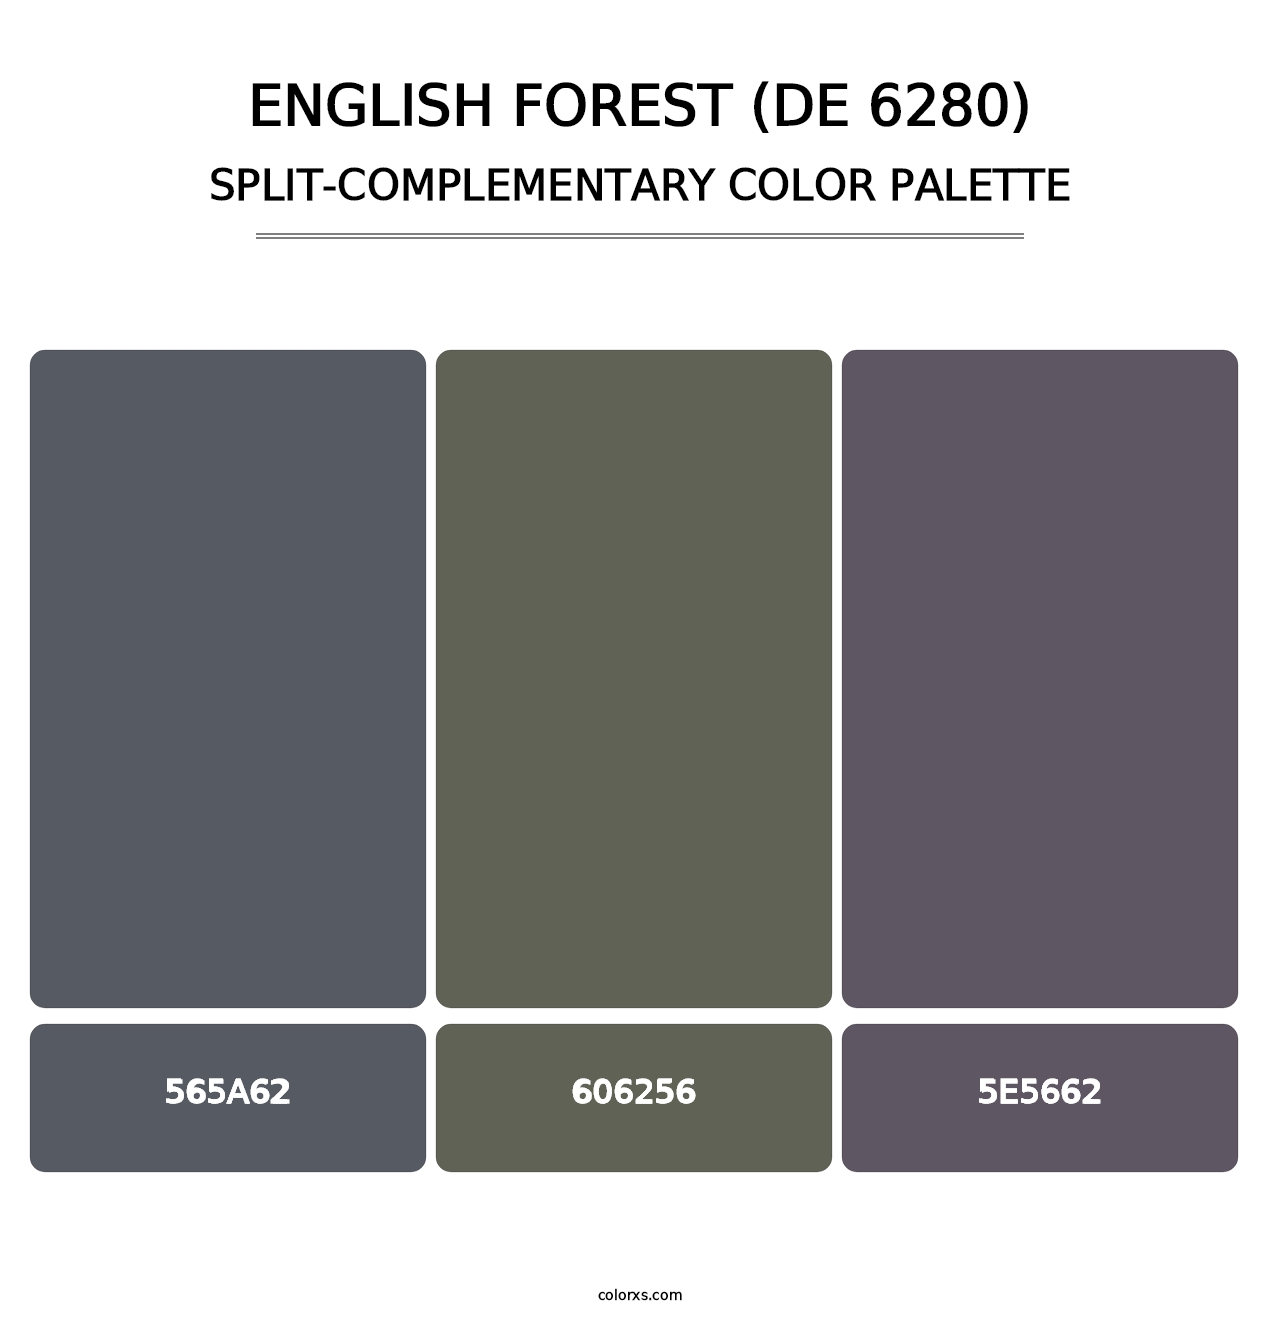 English Forest (DE 6280) - Split-Complementary Color Palette